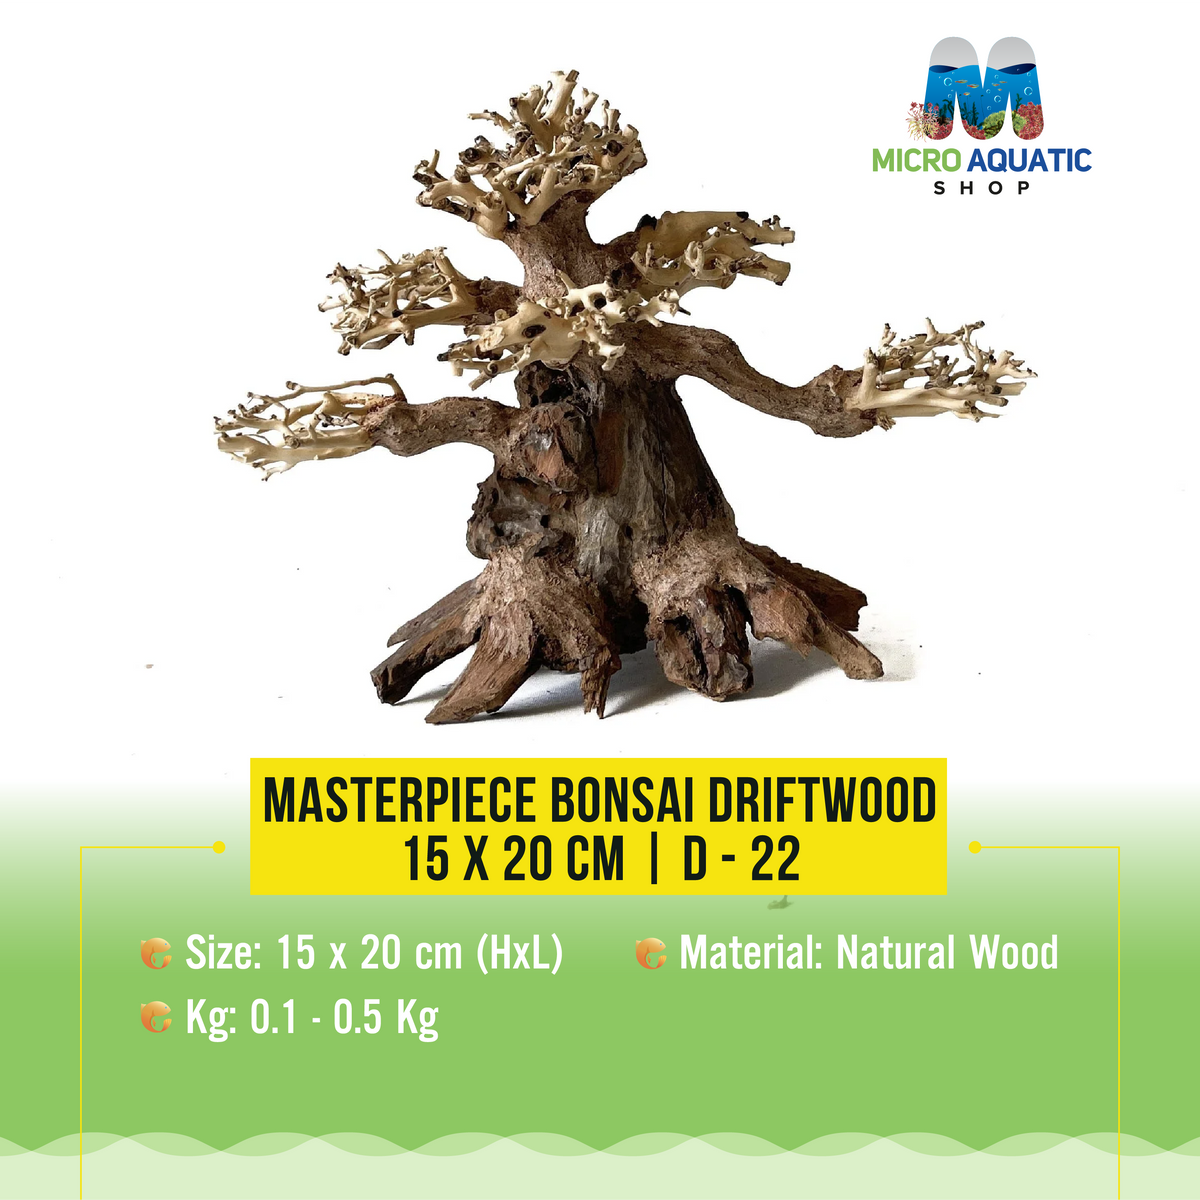 Masterpiece Bonsai Driftwood - 15 x 20 cm | D - 22